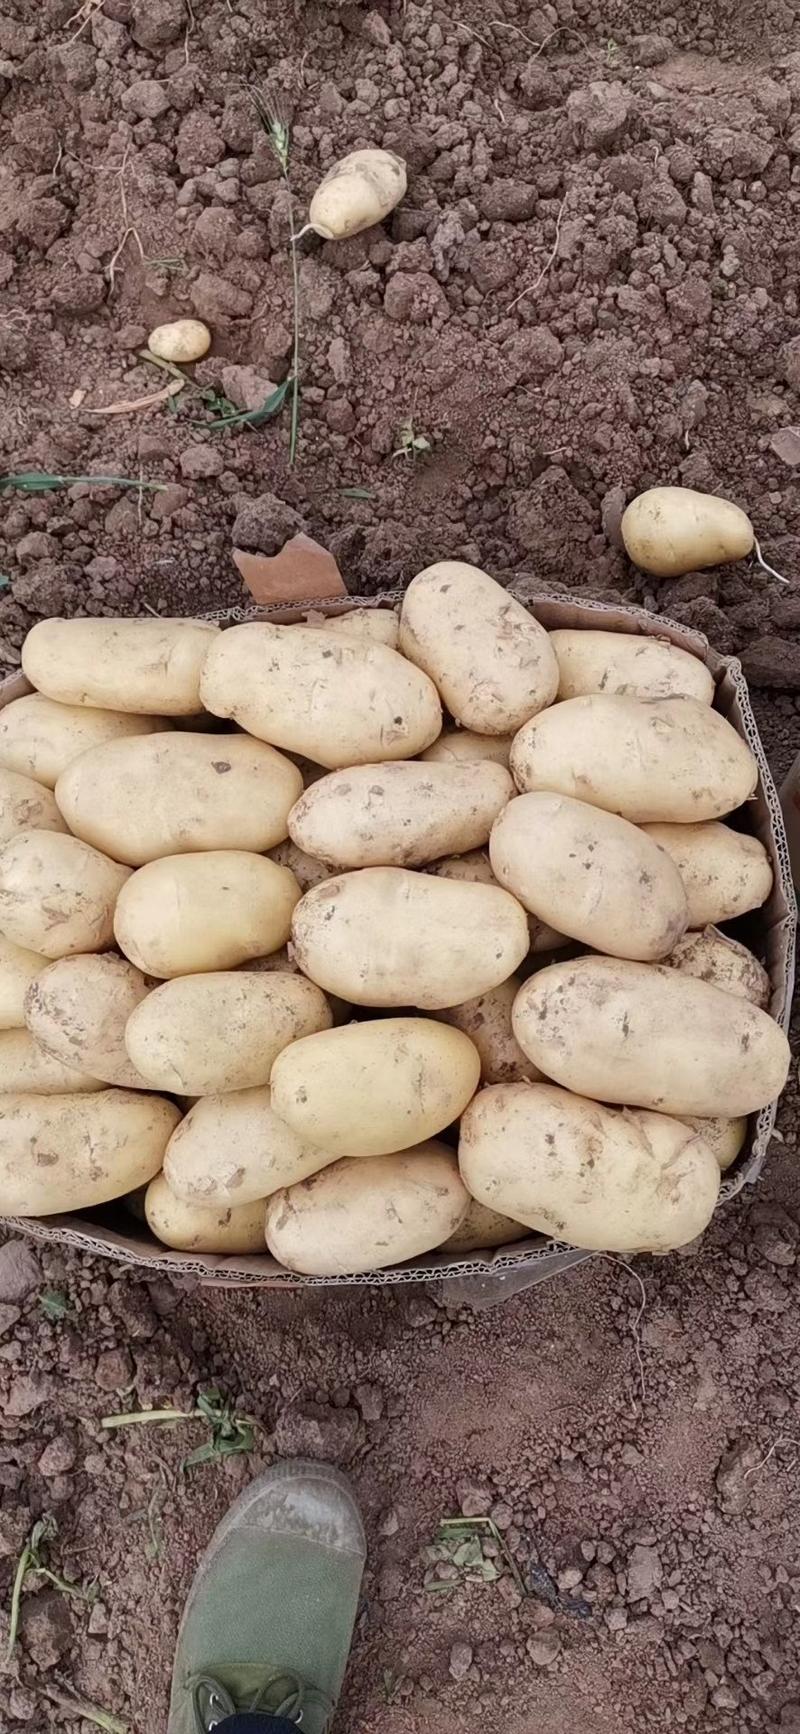 【土豆】山东土豆V7荷兰十五土豆大量上市品种齐全